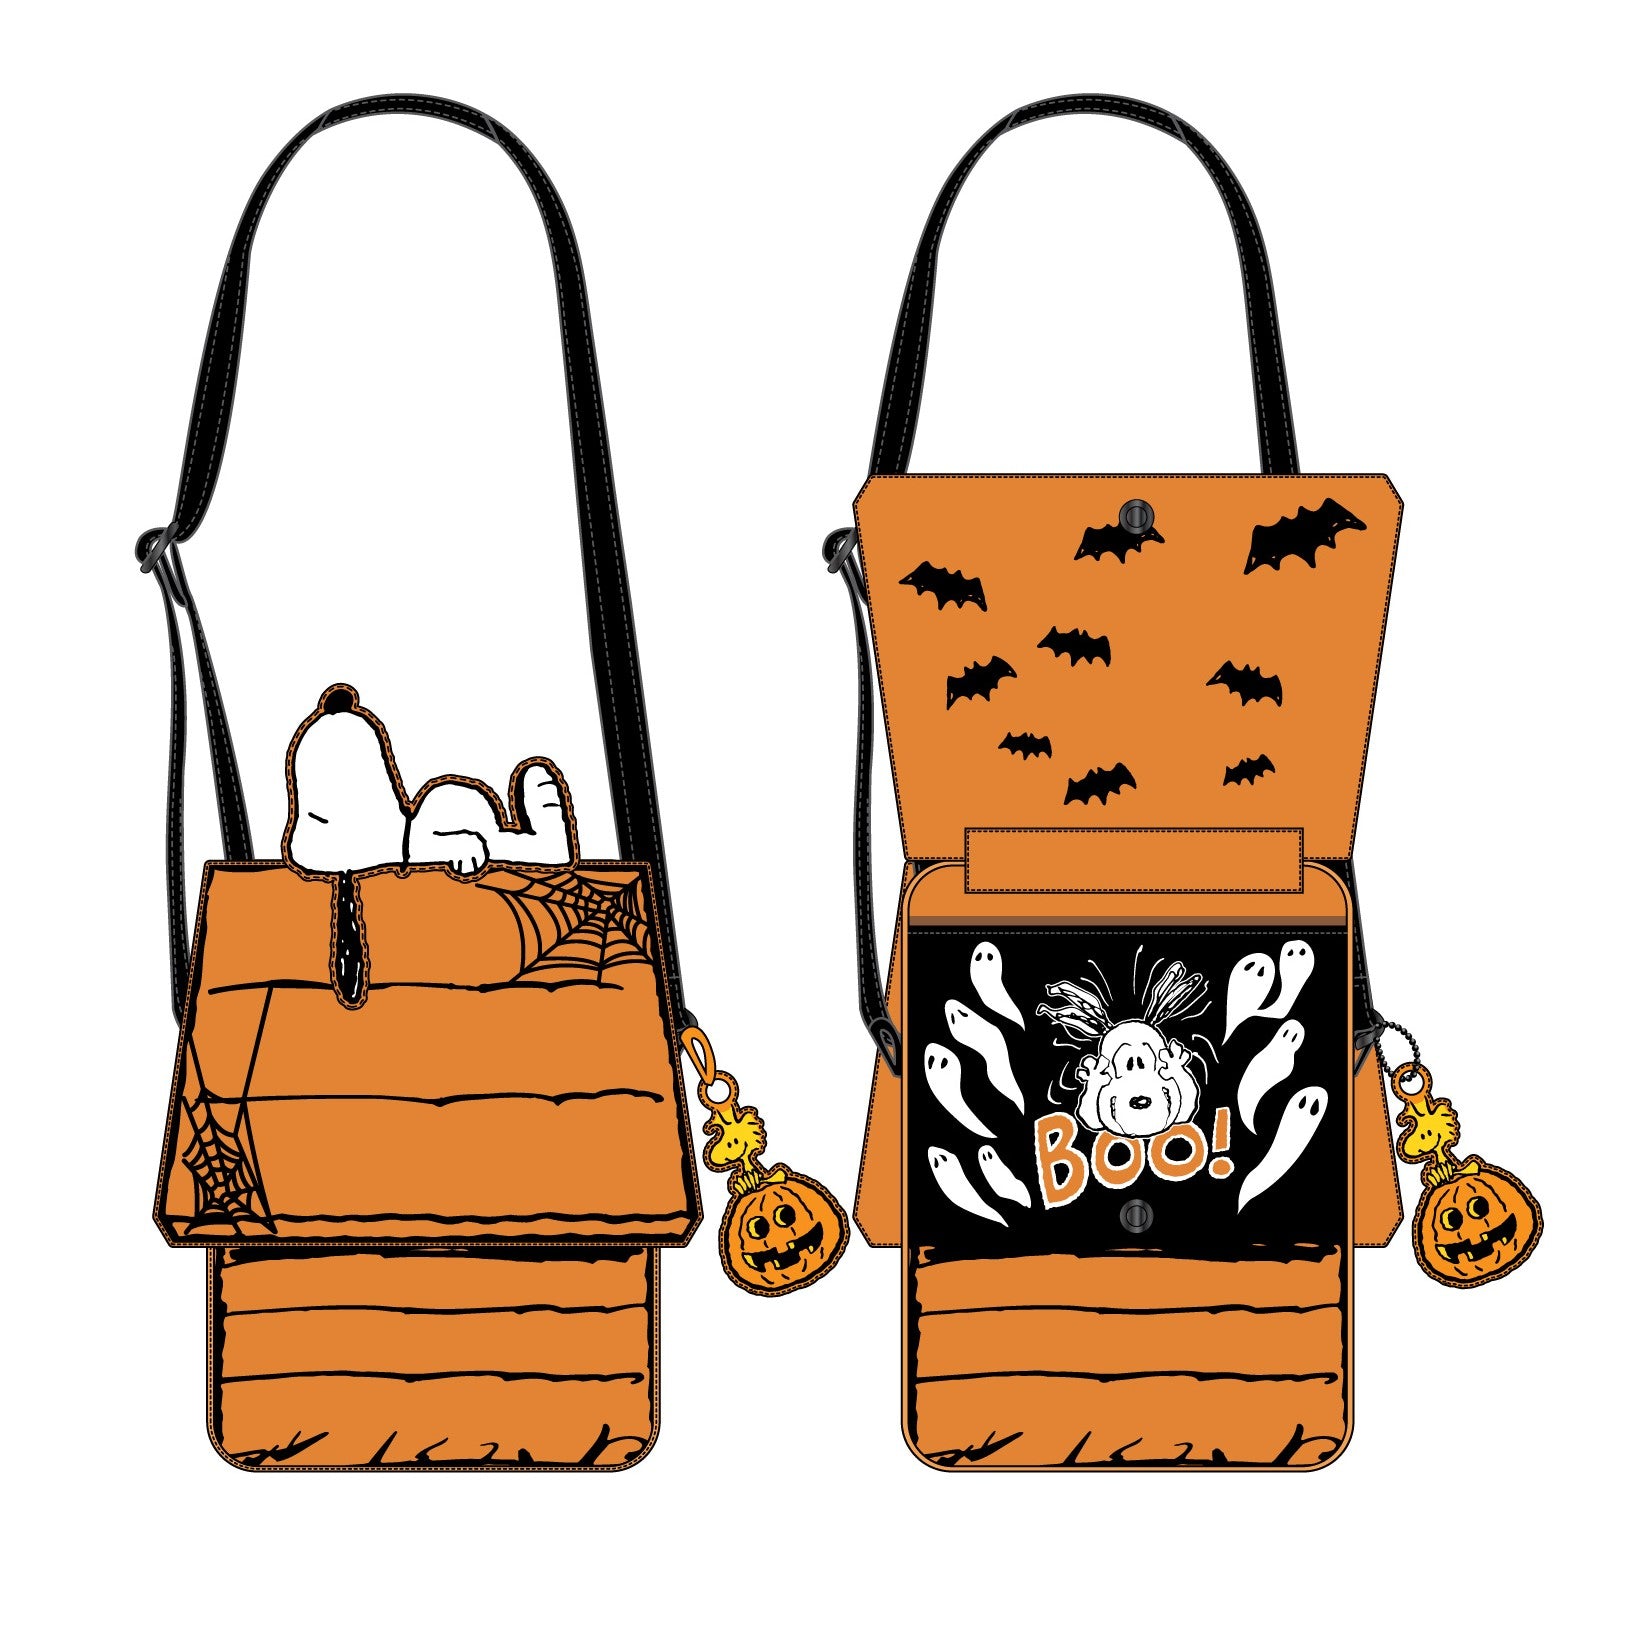 Peanuts Great Pumpkin Snoopy Mini Backpack